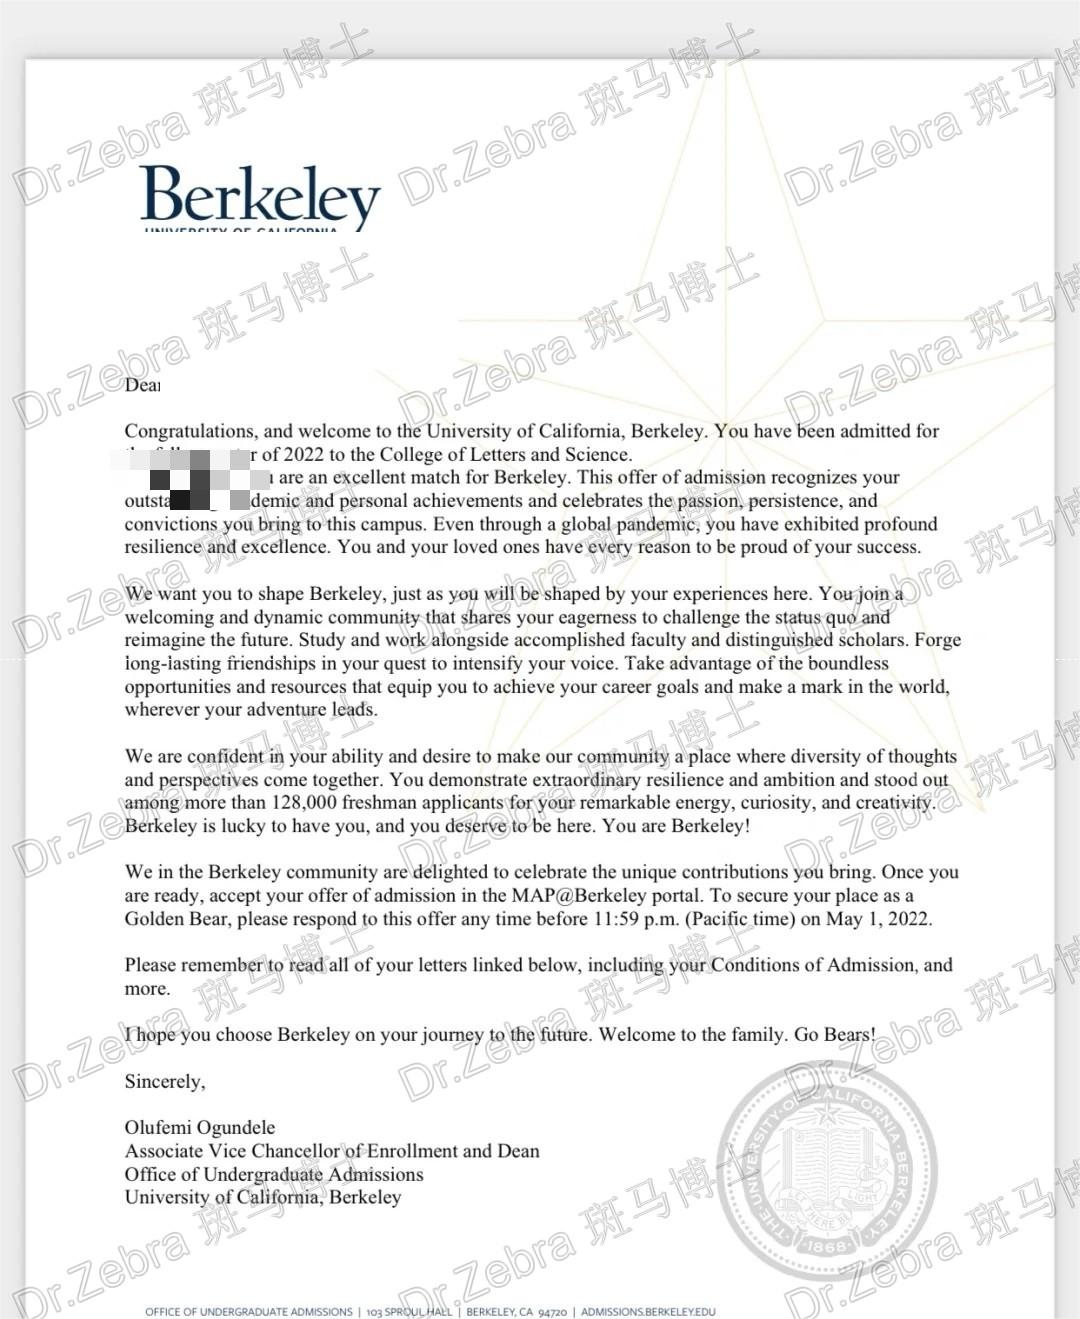 斑马博士、斑马博士留学中心、加州大学伯克利分校、University of California, Berkeley、 The College of Letters & Science、 文理学院